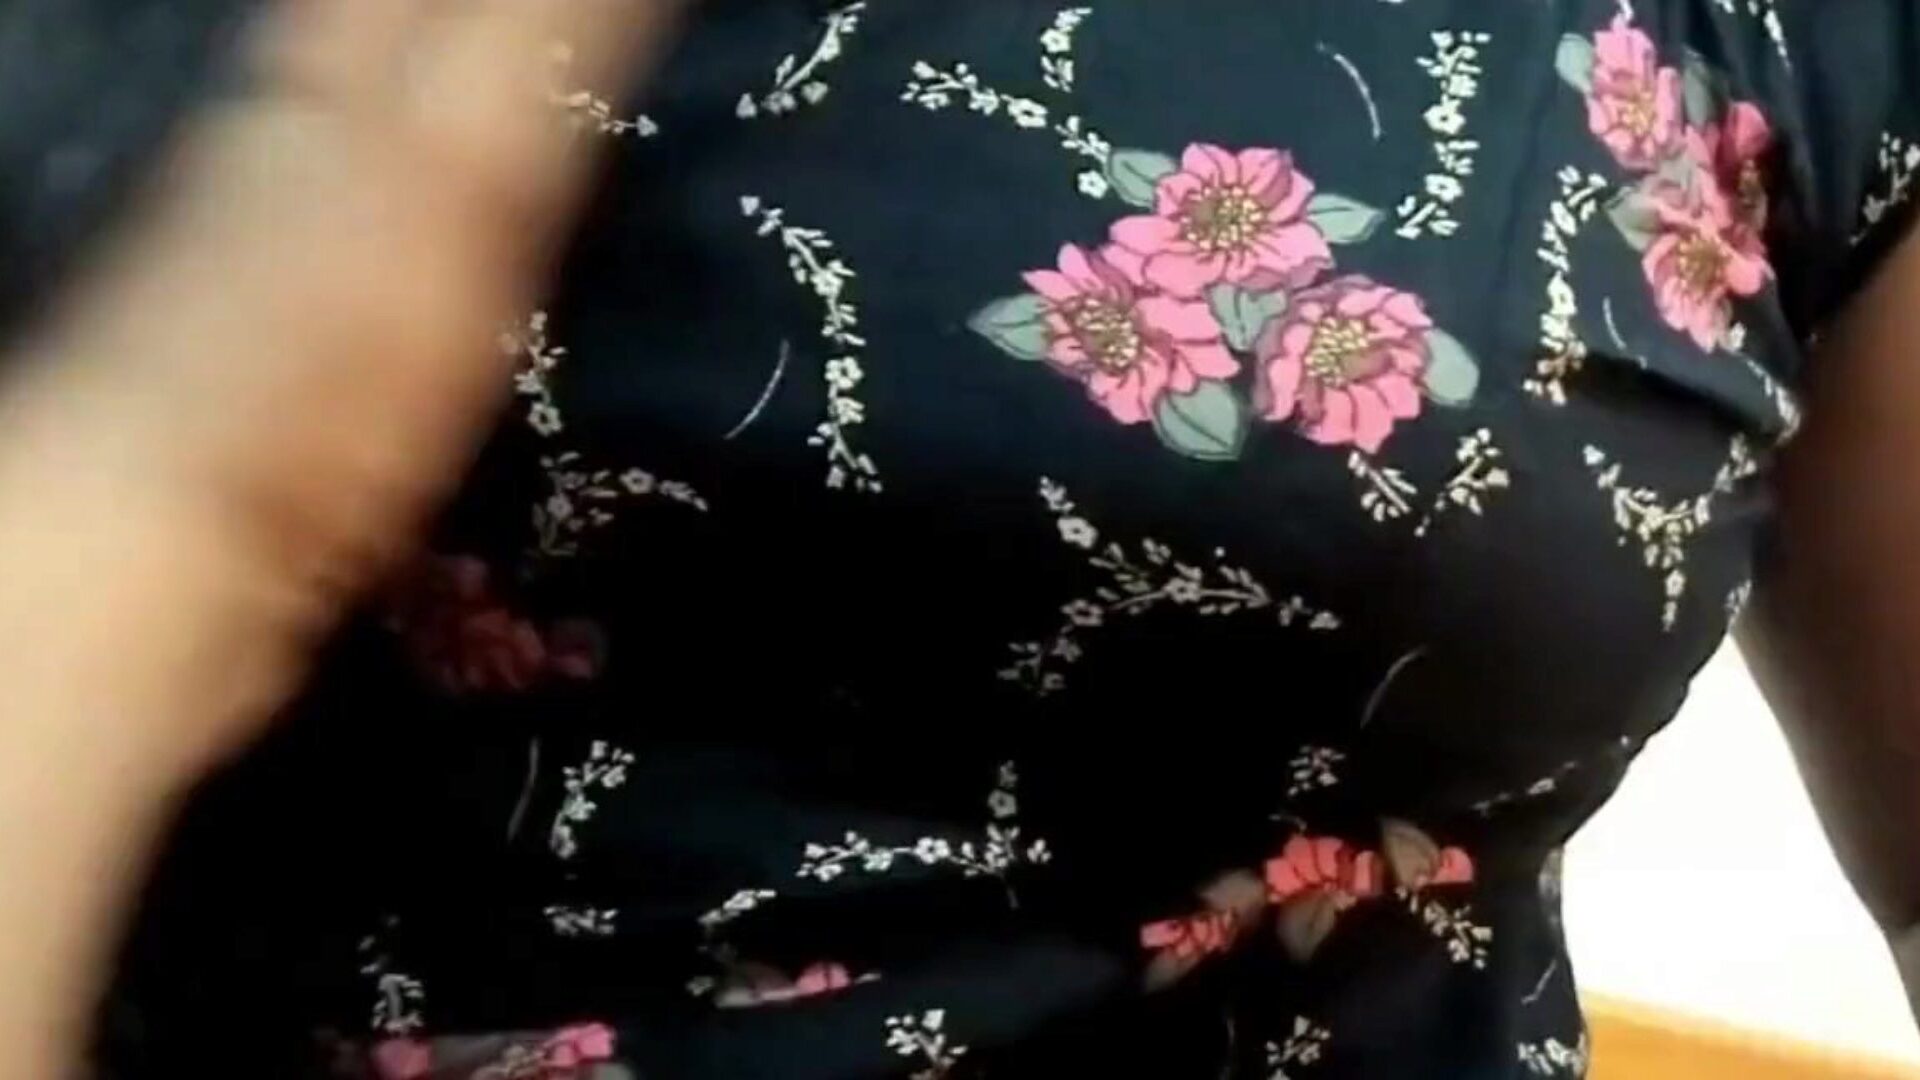 borsten aanraken en neuken met rondborstige dame: gratis hd porno 2a bekijk tieten aanraken en neuken met rondborstige dame aflevering op xhamster - het ultieme archief van gratis bangladeshi aziatisch hd hardcore pornografie tube filmscènes